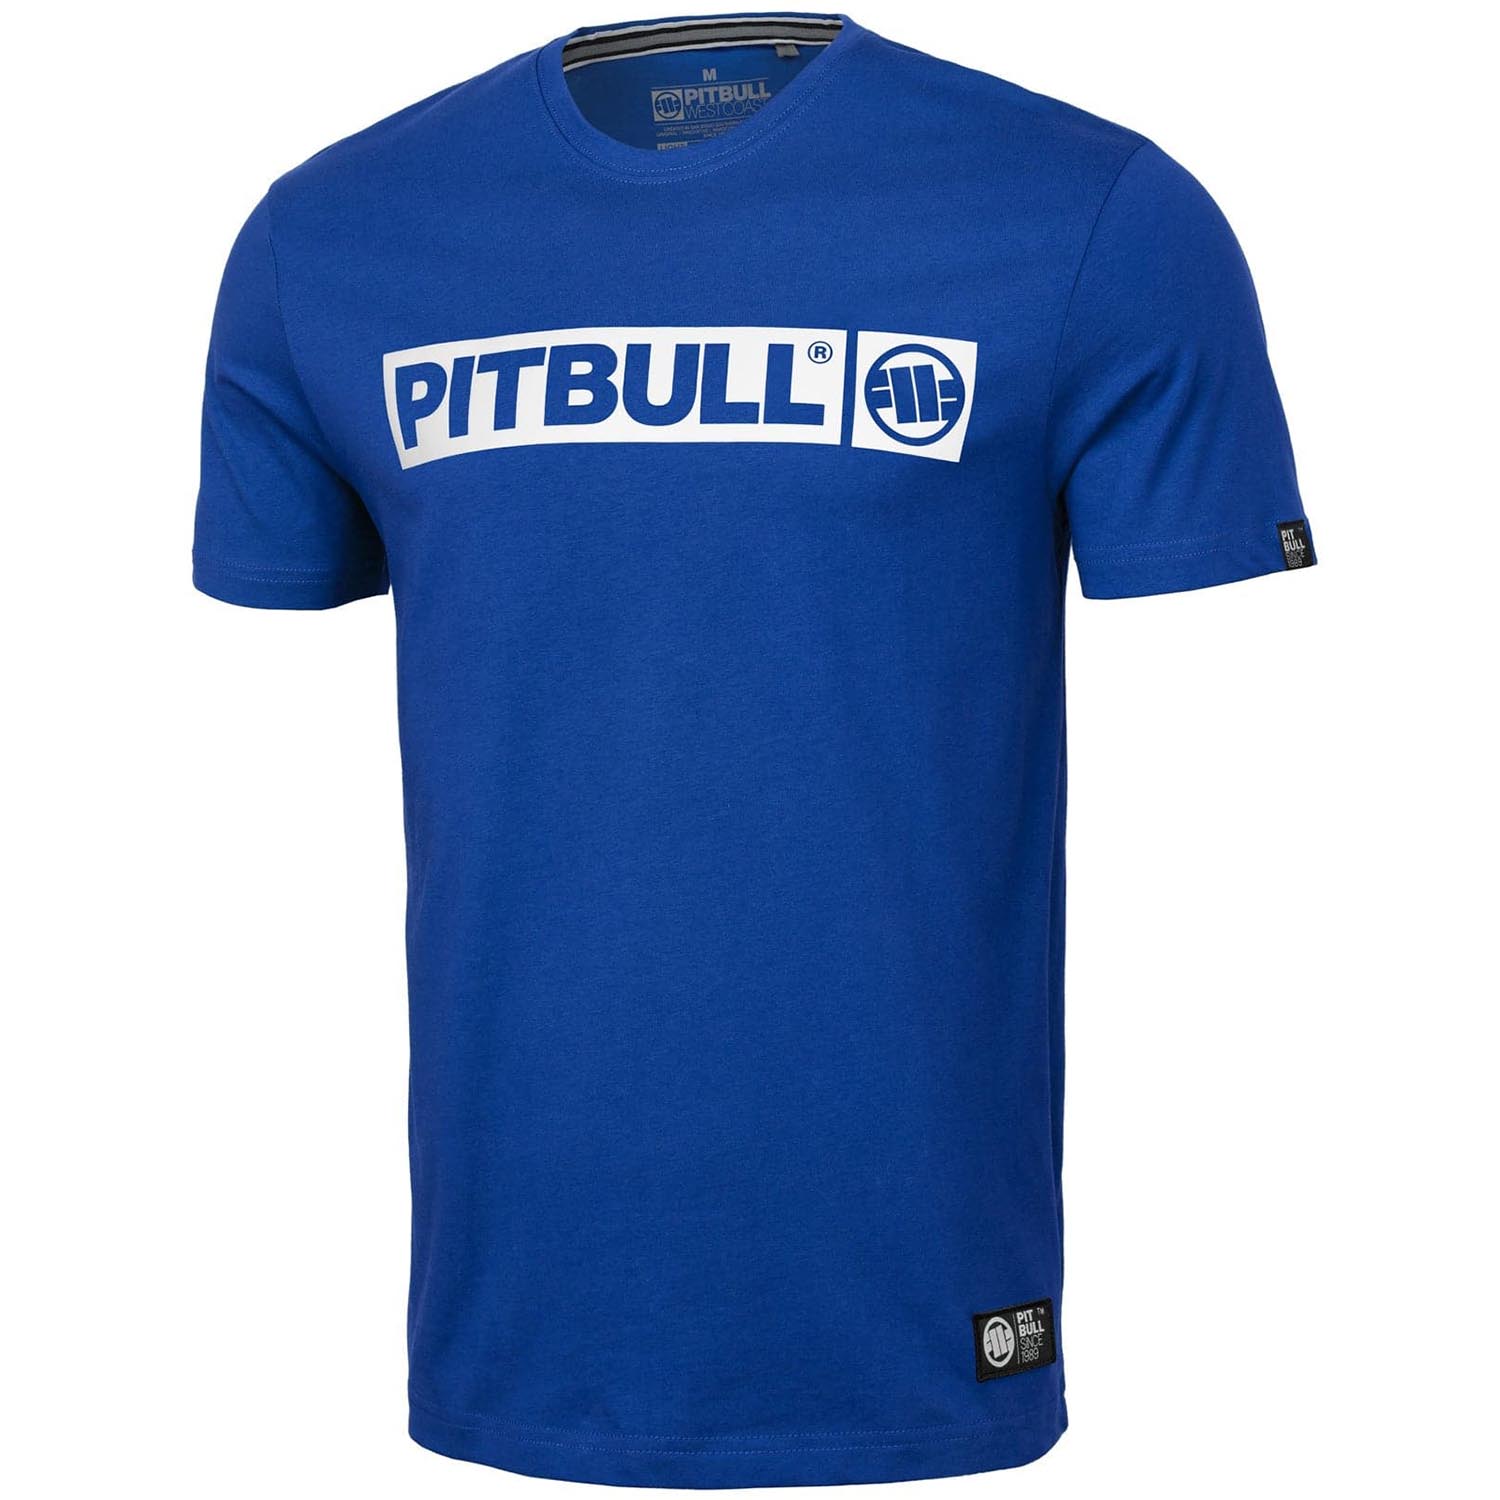 Pit Bull West Coast T-Shirt, Hilltop S70, blue